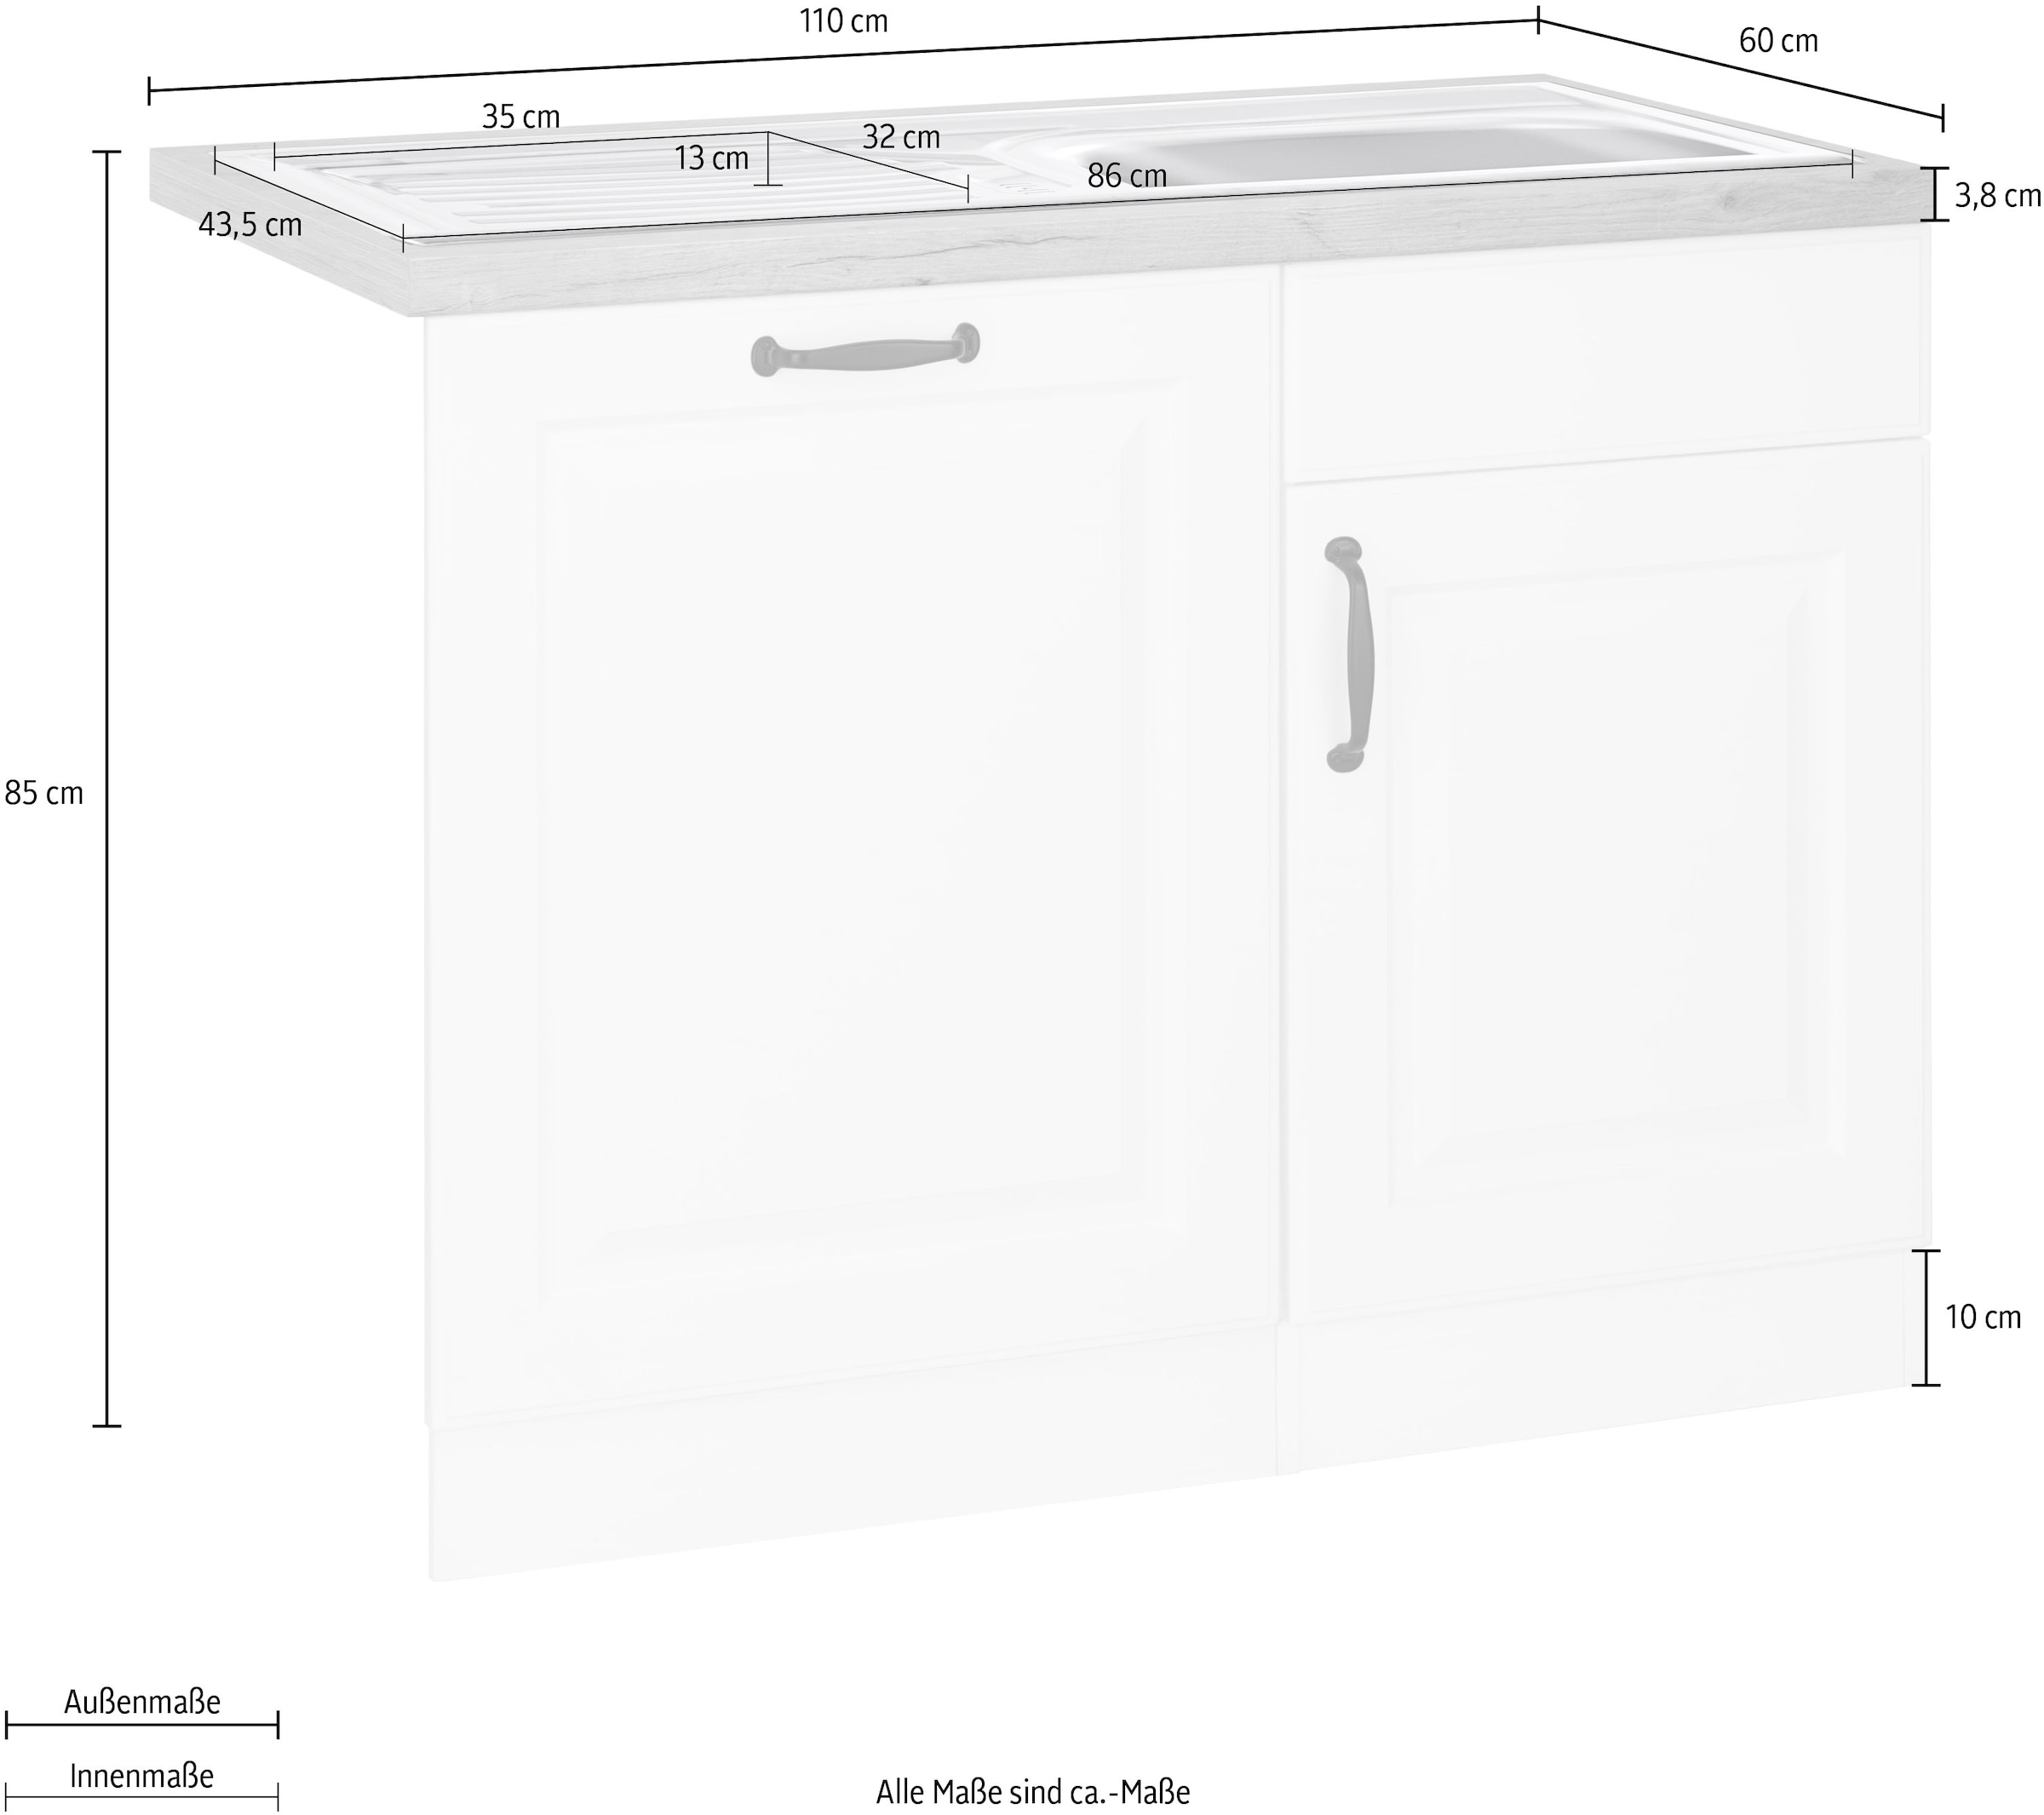 wiho Küchen Spülenschrank »Erla«, 110 cm breit, inkl. Tür/Sockel für  Geschirrspüler auf Rechnung kaufen